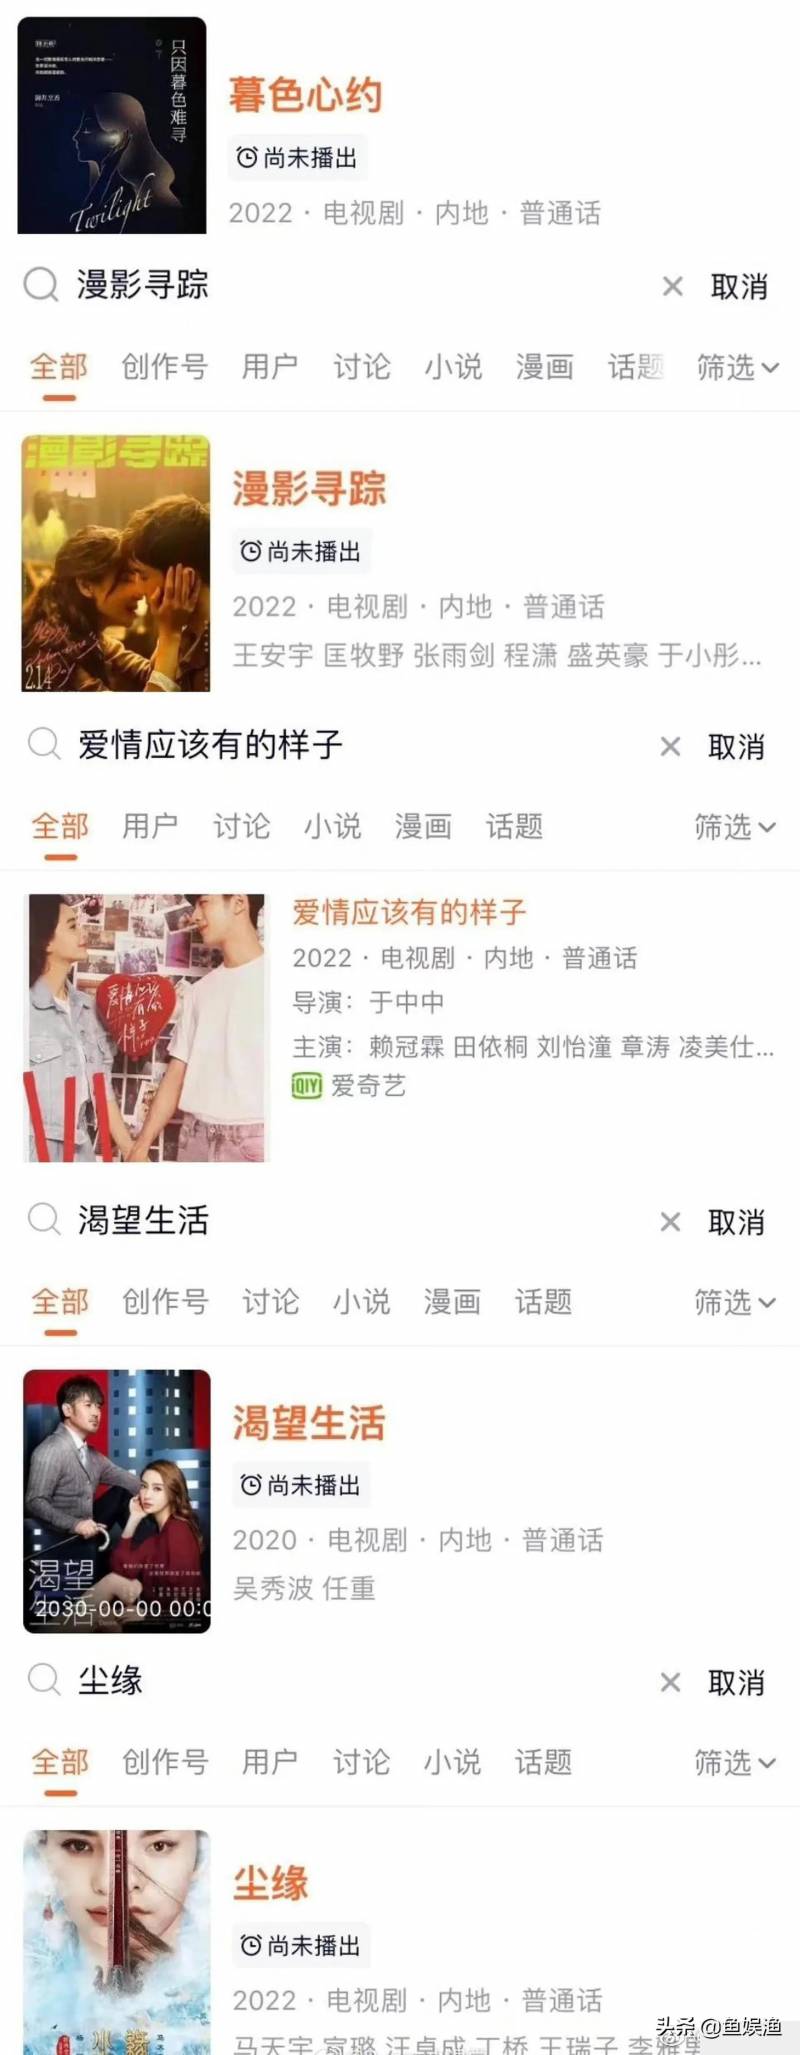 杨颖工作室的微博更新，揭晓8月全新行程，再次用实力击碎不实“被封杀”谣言